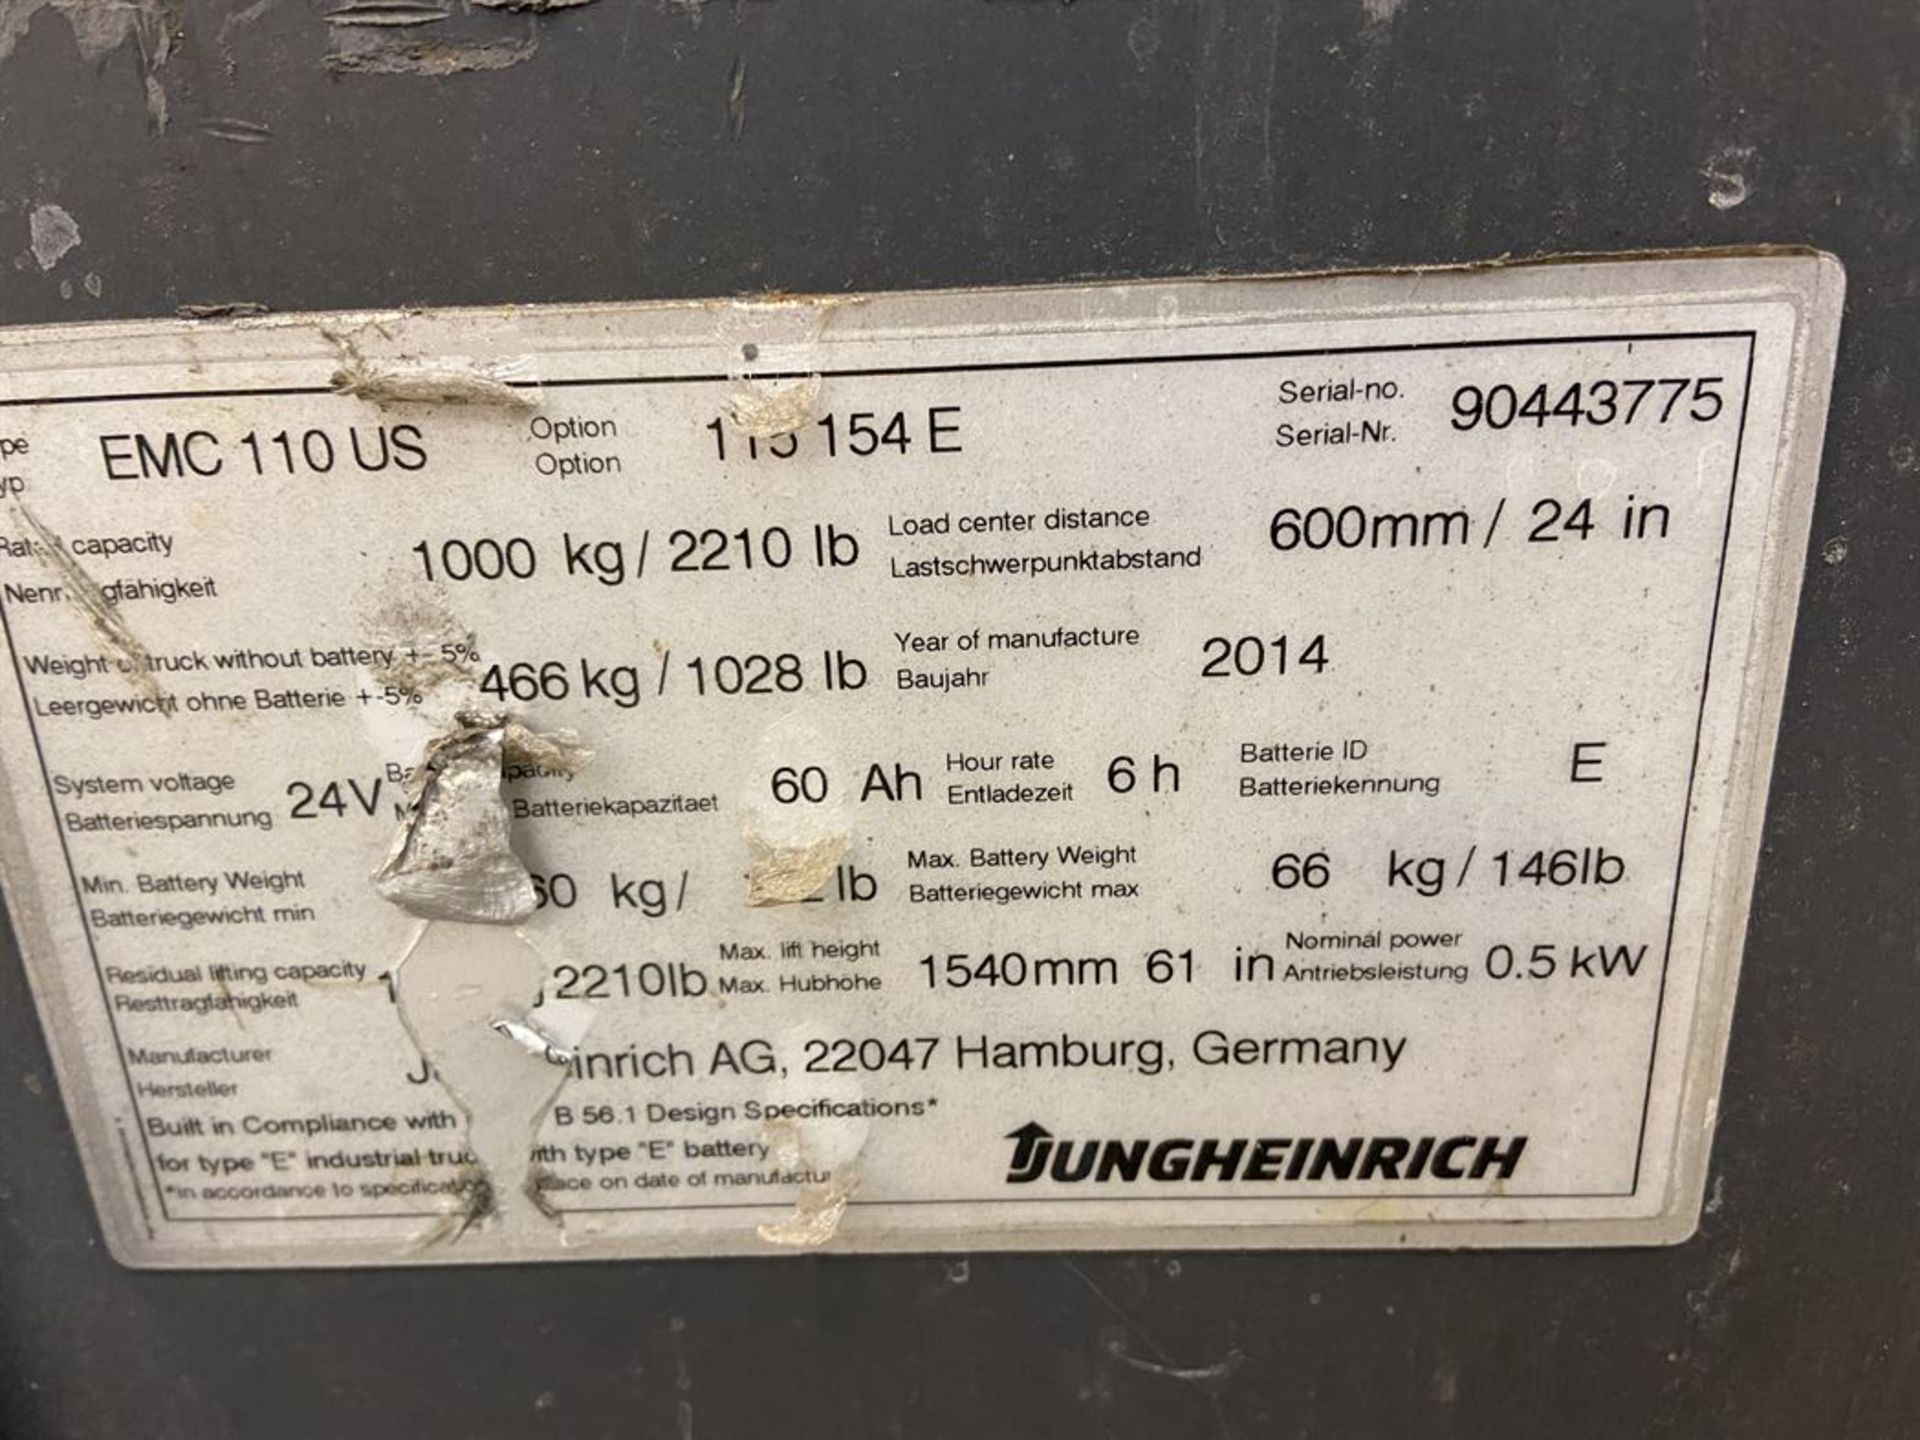 Jungheinrich EMC 110 Walkie Stacker, s/n 90443775 - Image 2 of 3